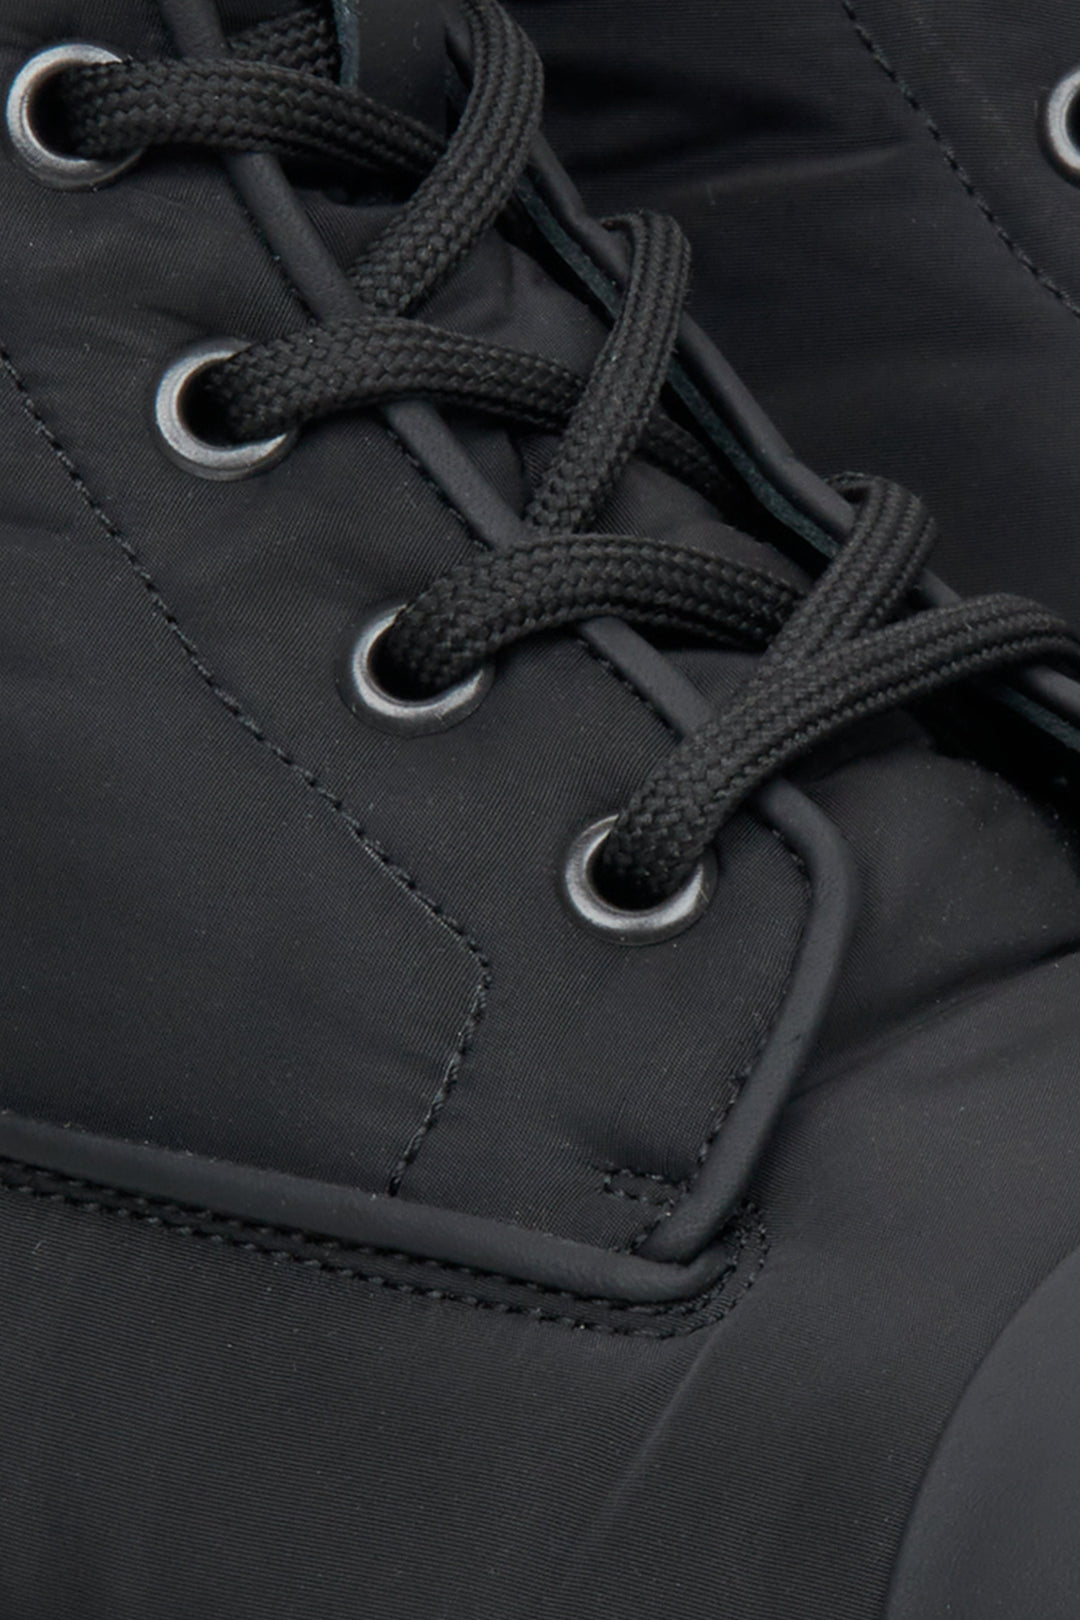 Men's black textile Estro autumn boots - close-up on the detail.